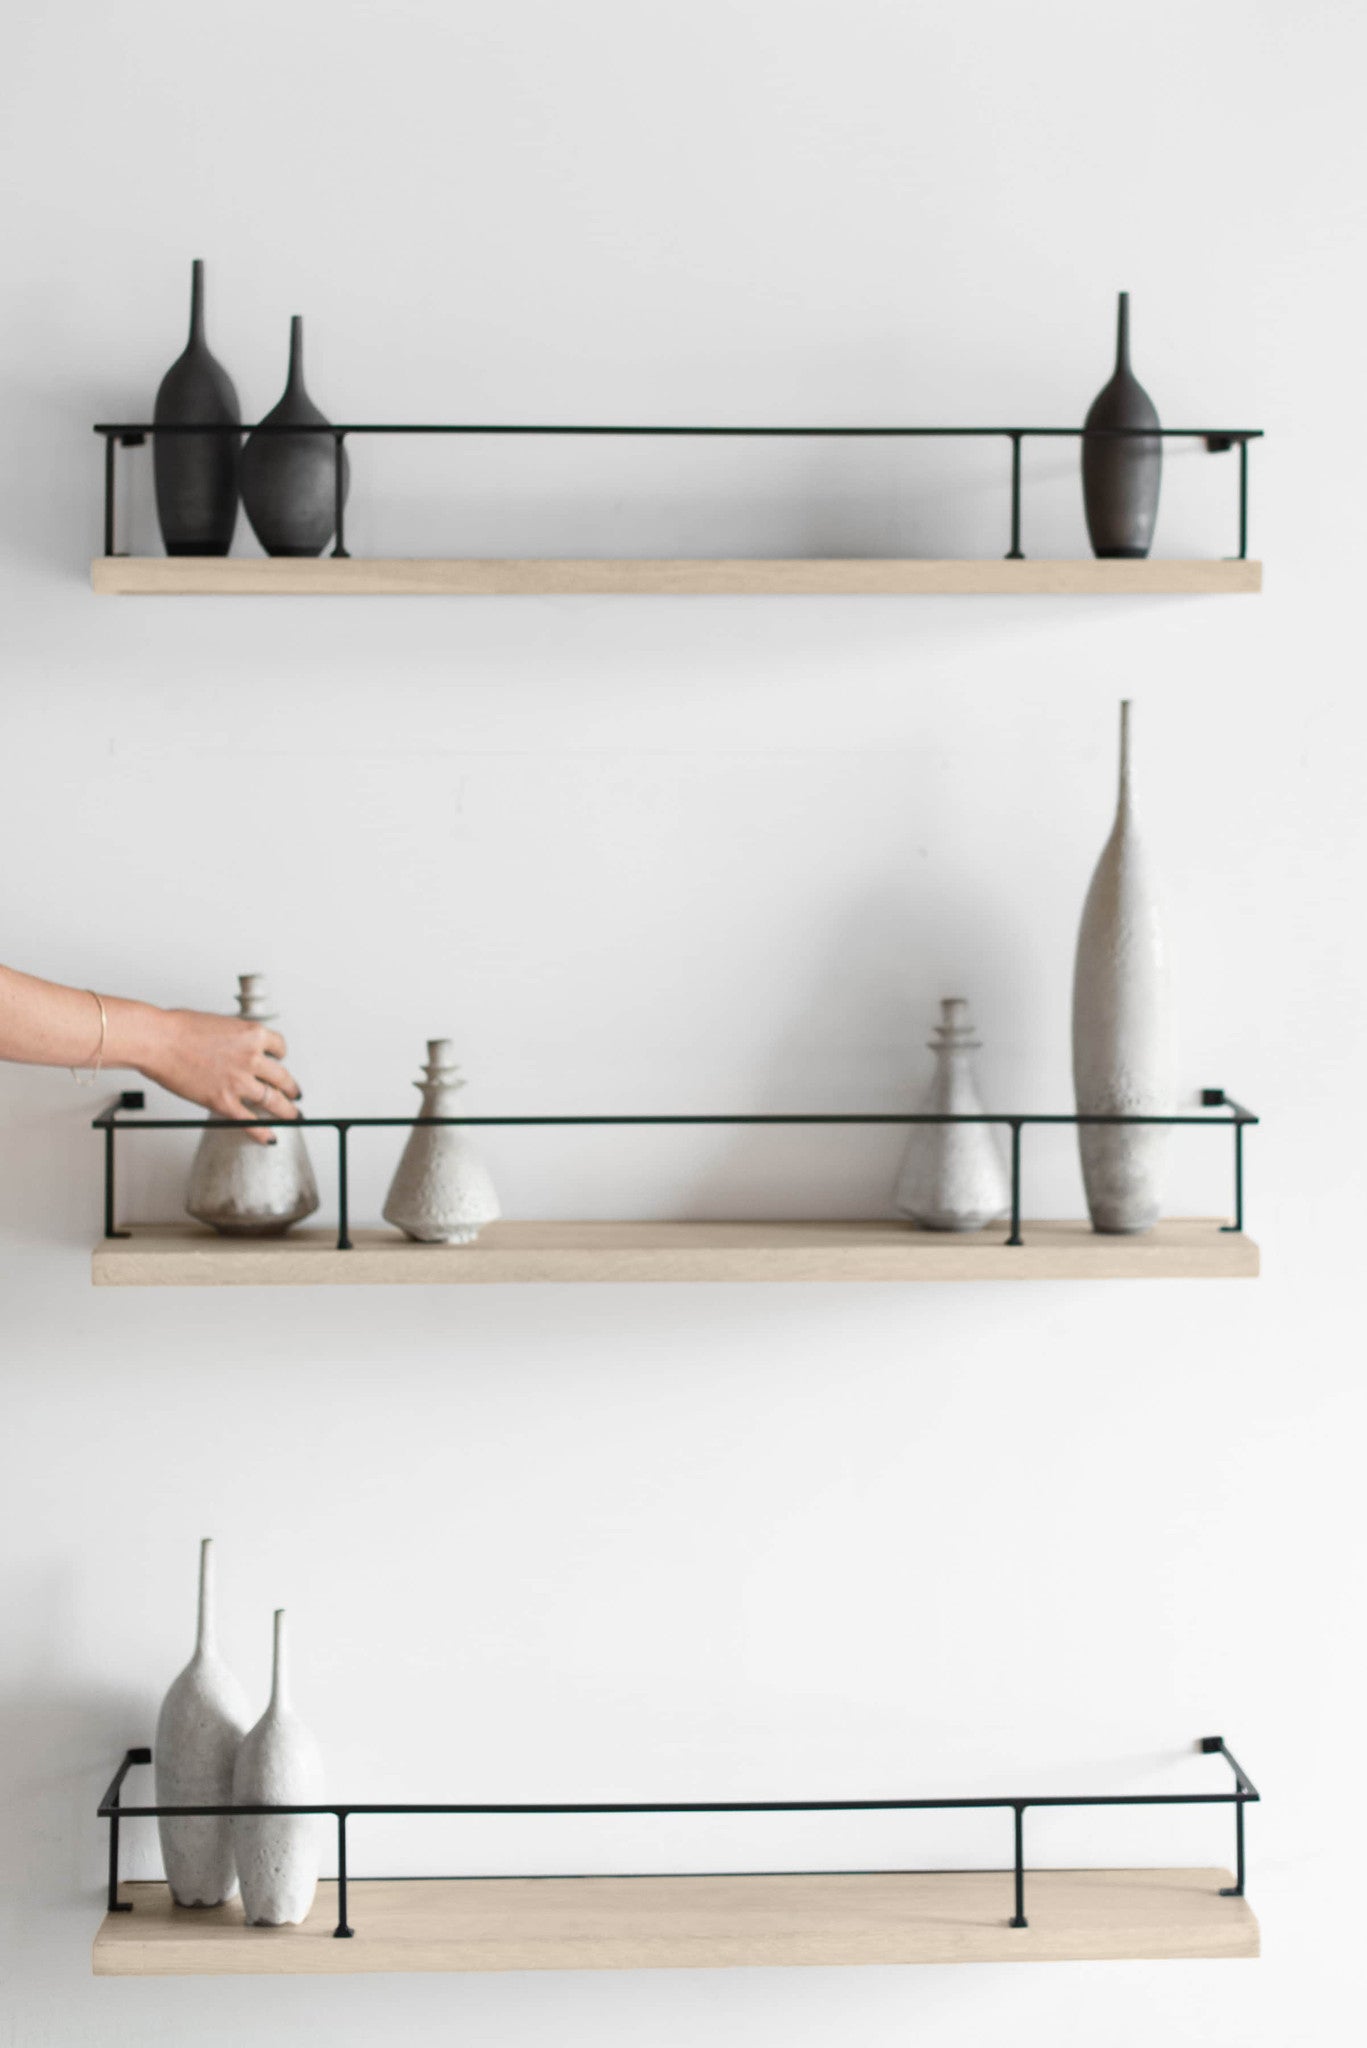 Croft house shelves- Oak wood and metal shelves, styled